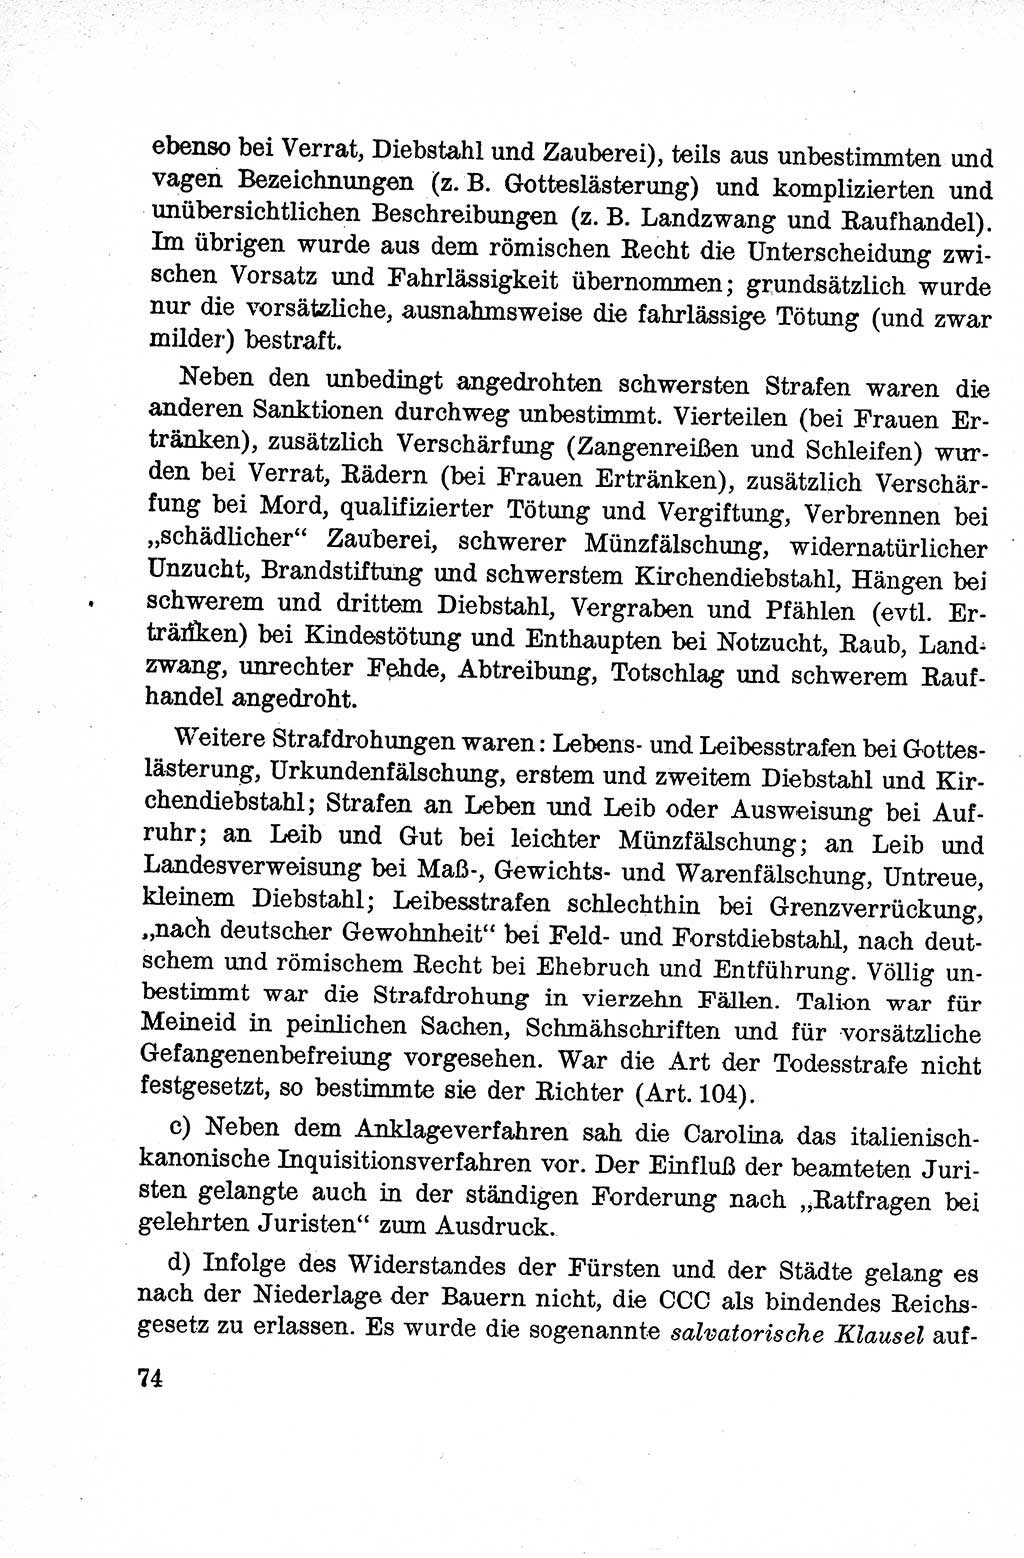 Lehrbuch des Strafrechts der Deutschen Demokratischen Republik (DDR), Allgemeiner Teil 1959, Seite 74 (Lb. Strafr. DDR AT 1959, S. 74)